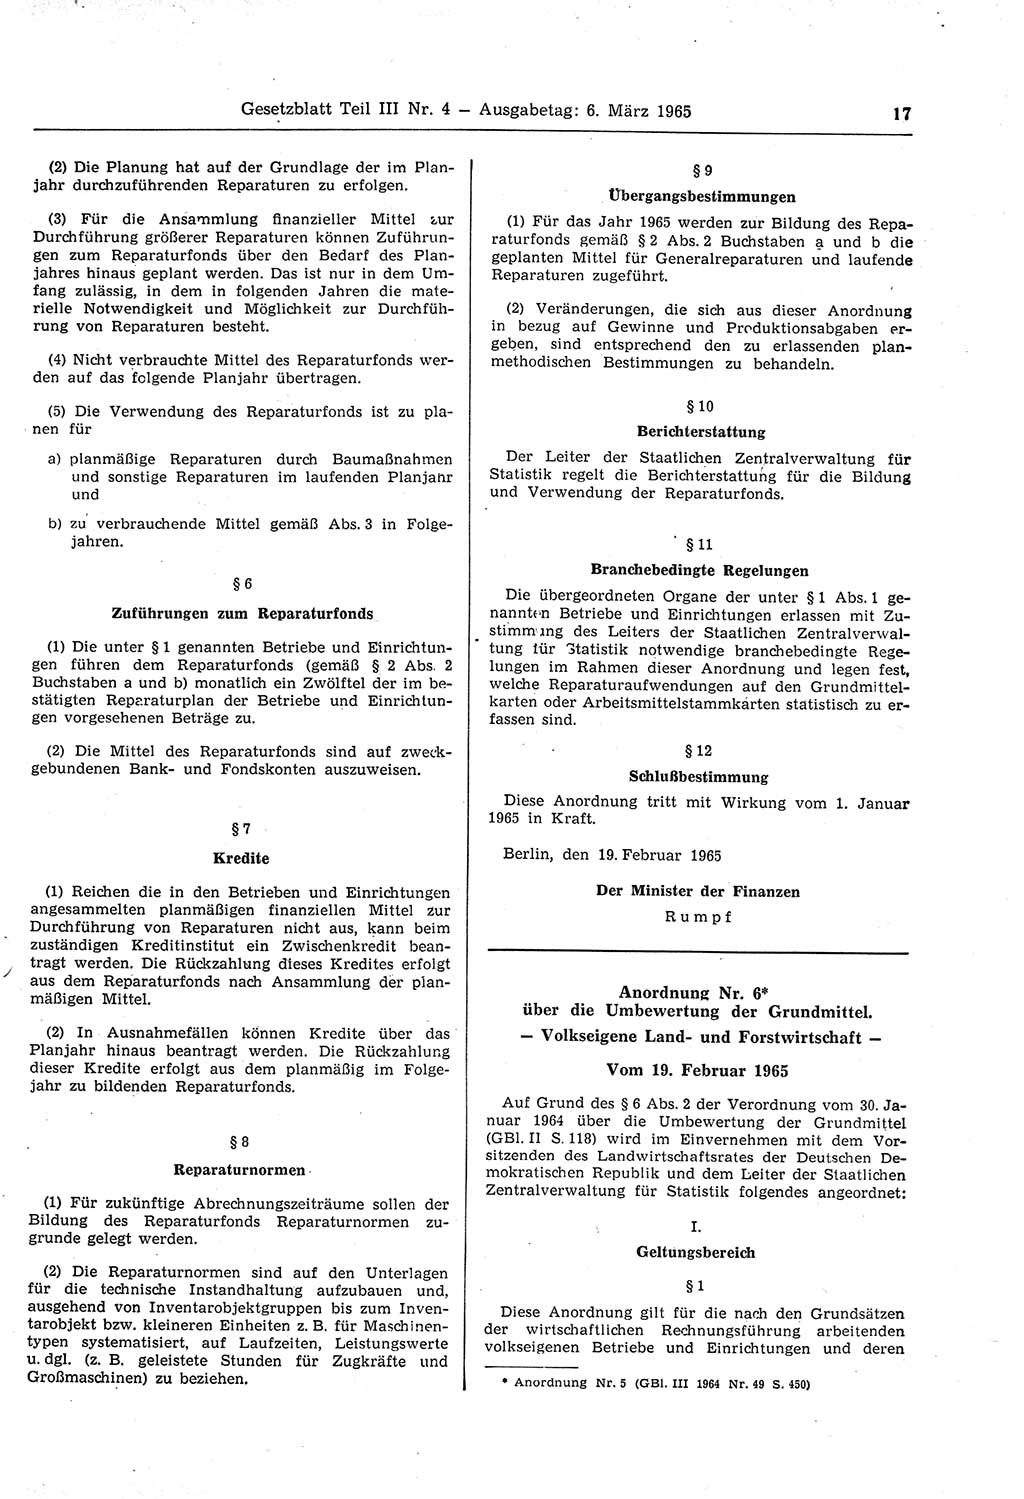 Gesetzblatt (GBl.) der Deutschen Demokratischen Republik (DDR) Teil ⅠⅠⅠ 1965, Seite 17 (GBl. DDR ⅠⅠⅠ 1965, S. 17)